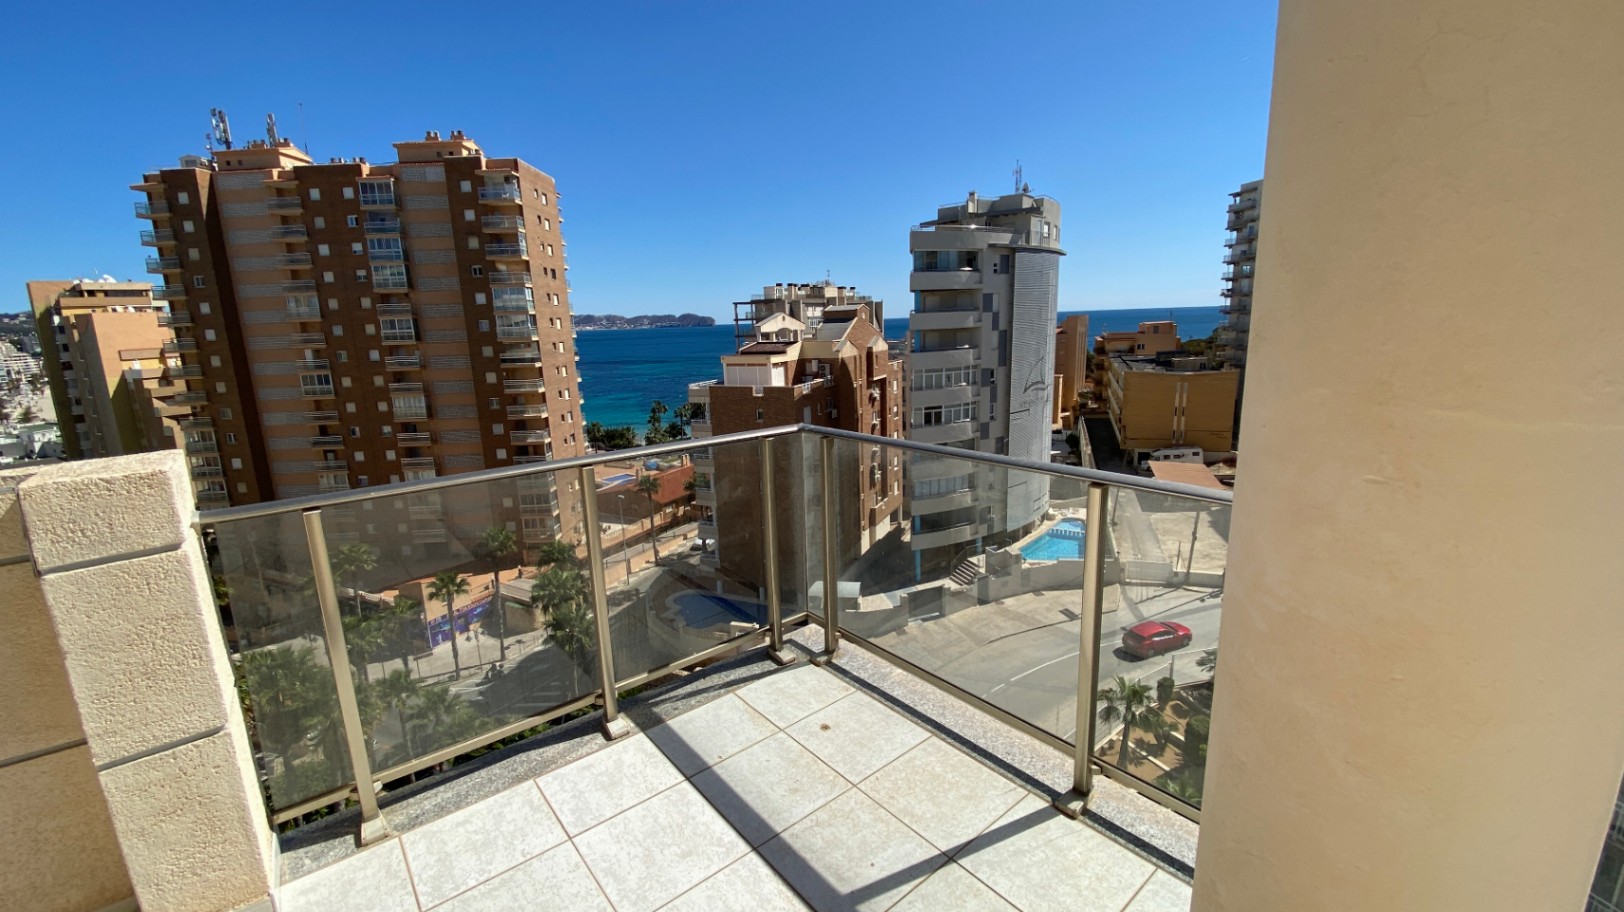 Jaarlijkse huur! Ruim en gezellig appartement met panoramisch uitzicht op zee in de haven van Calpe.